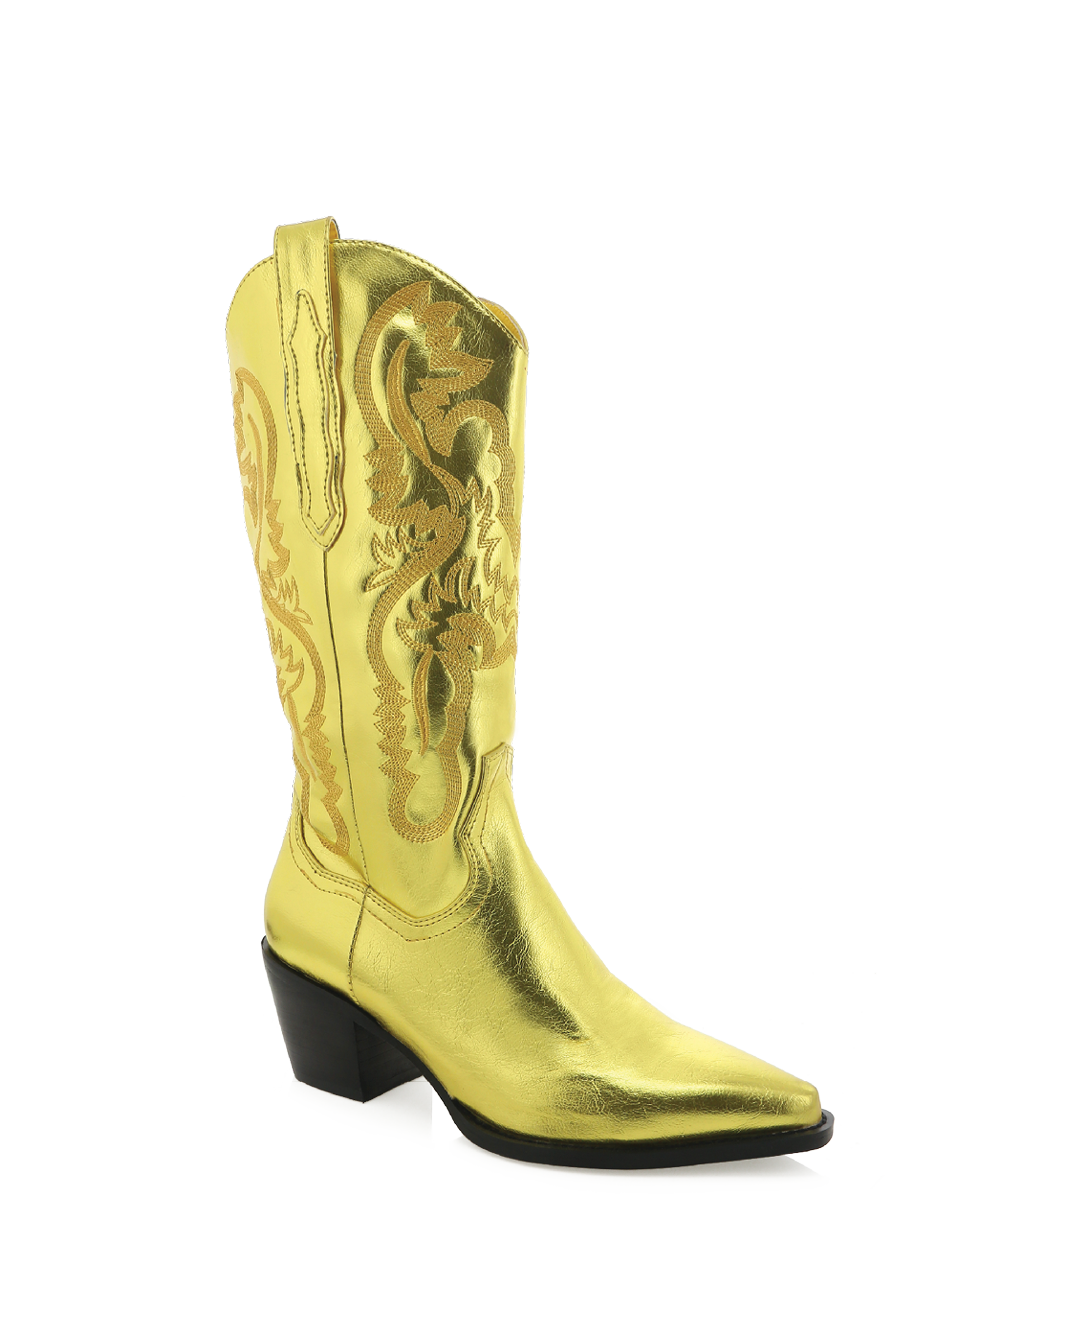 DANILO - CITRUS METALLIC-Boots-Billini-BILLINI USA